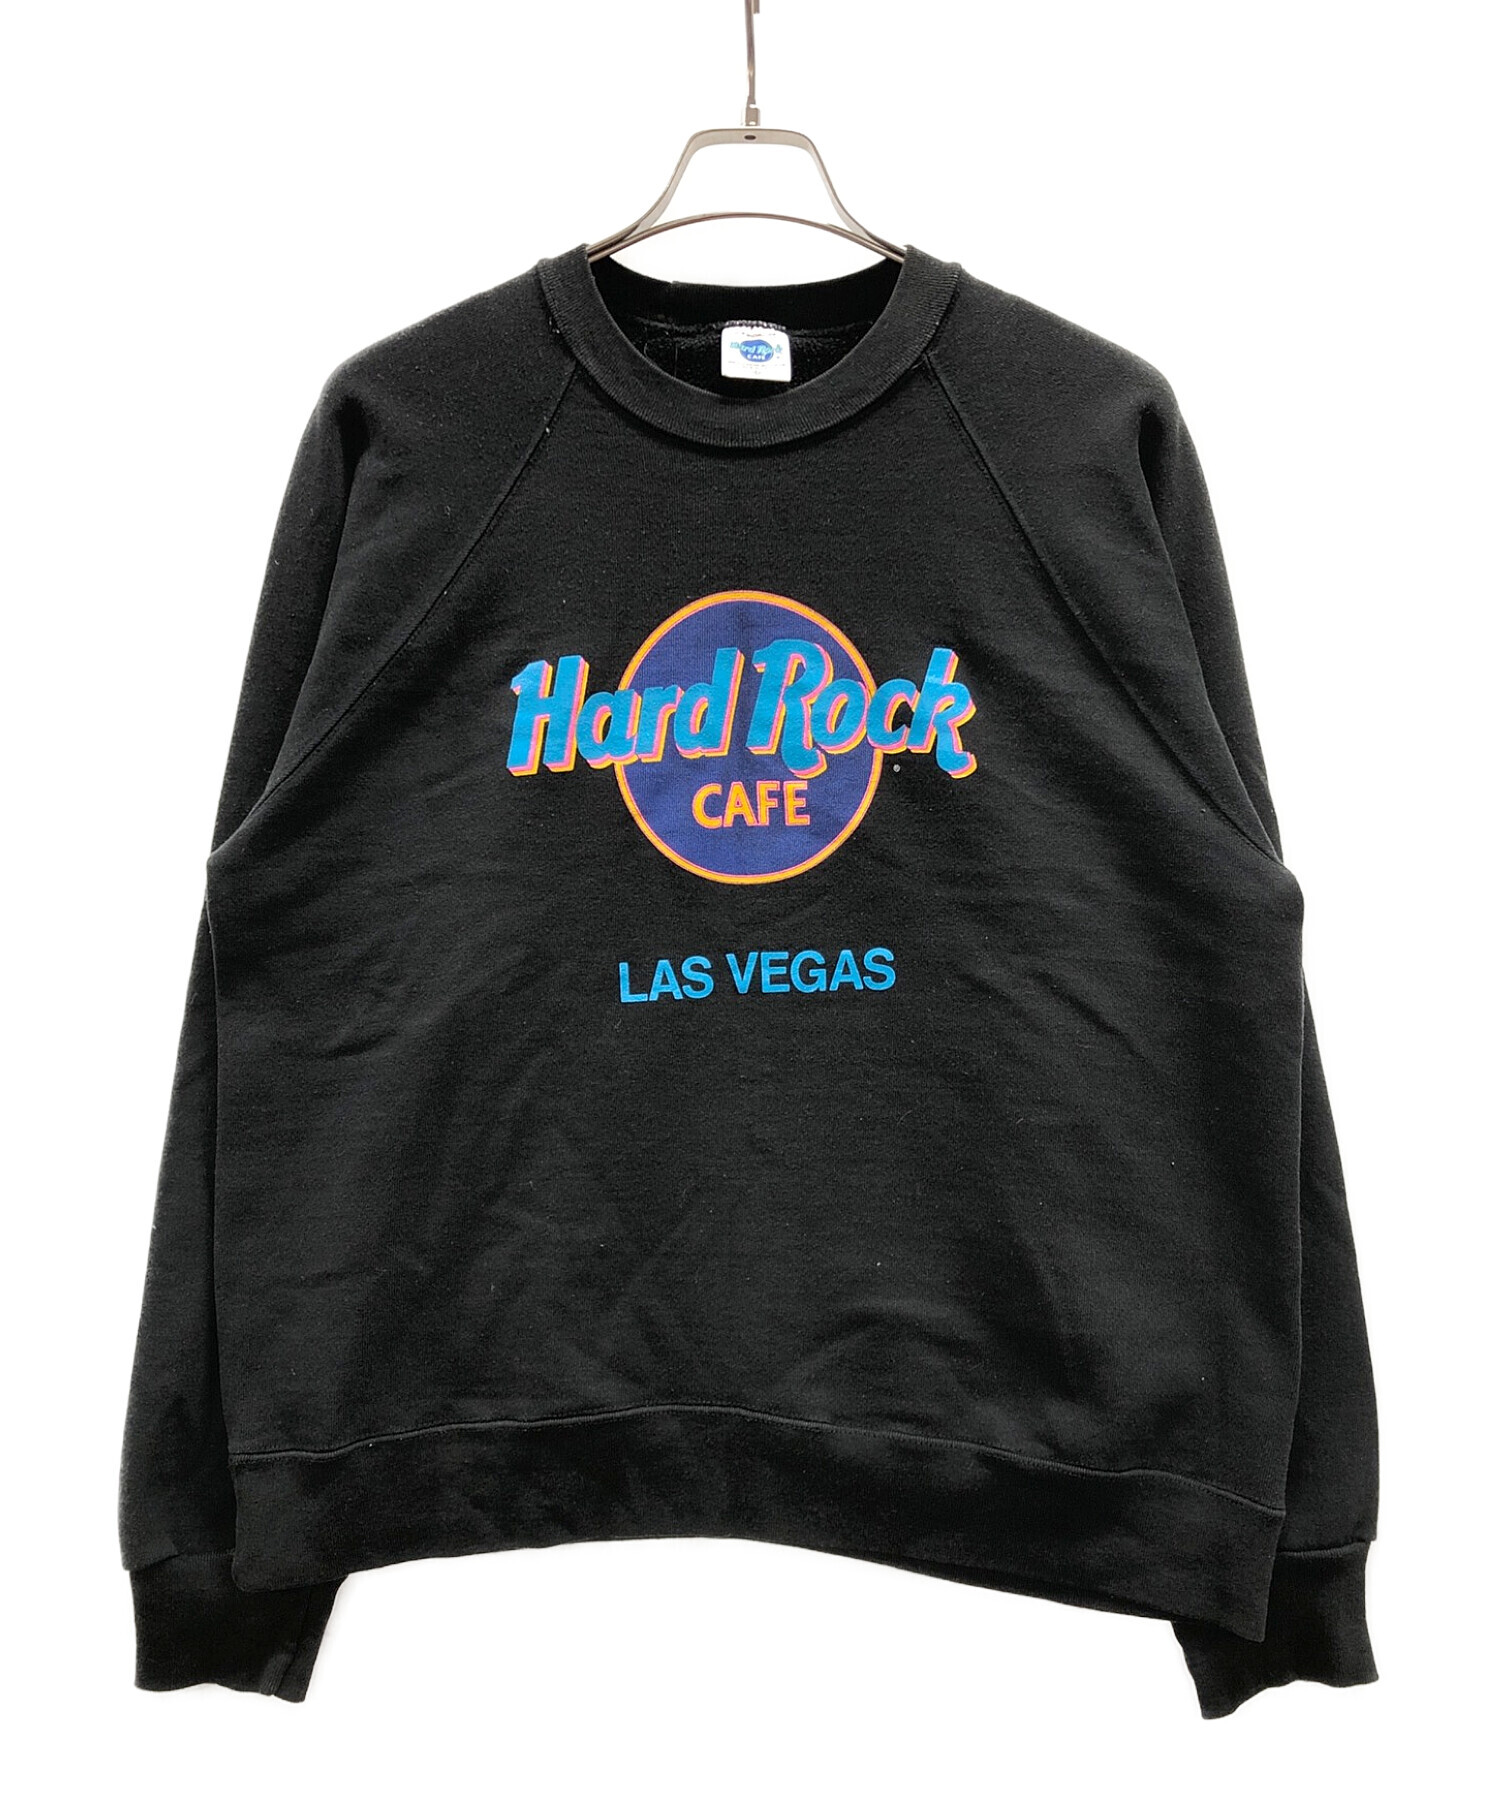 Hard Rock cafe (ハードロックカフェ) ヴィンテージスウェット ブラック サイズ:L